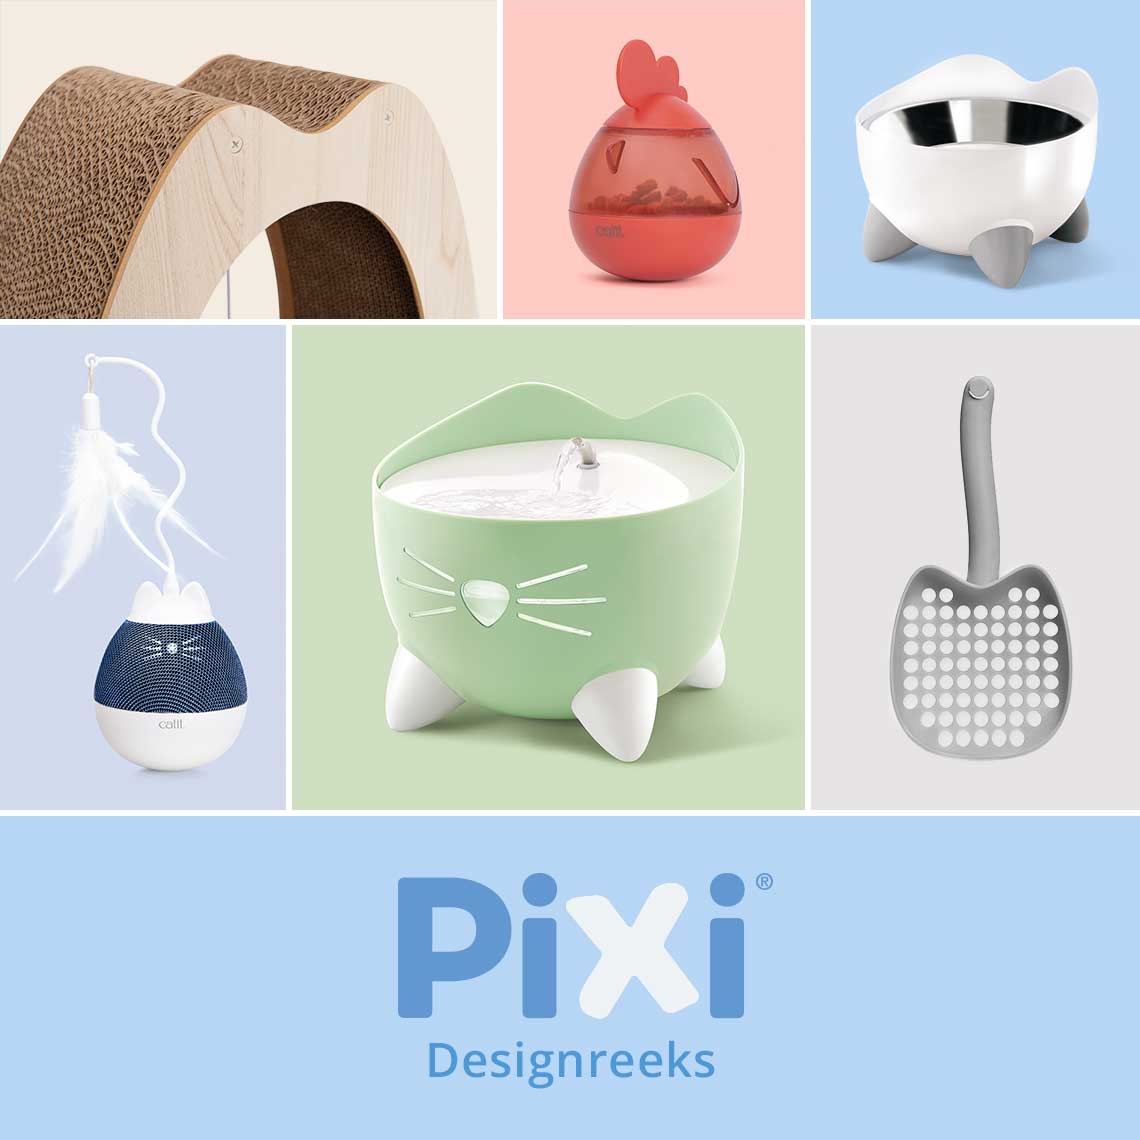 PIXI Designreeks